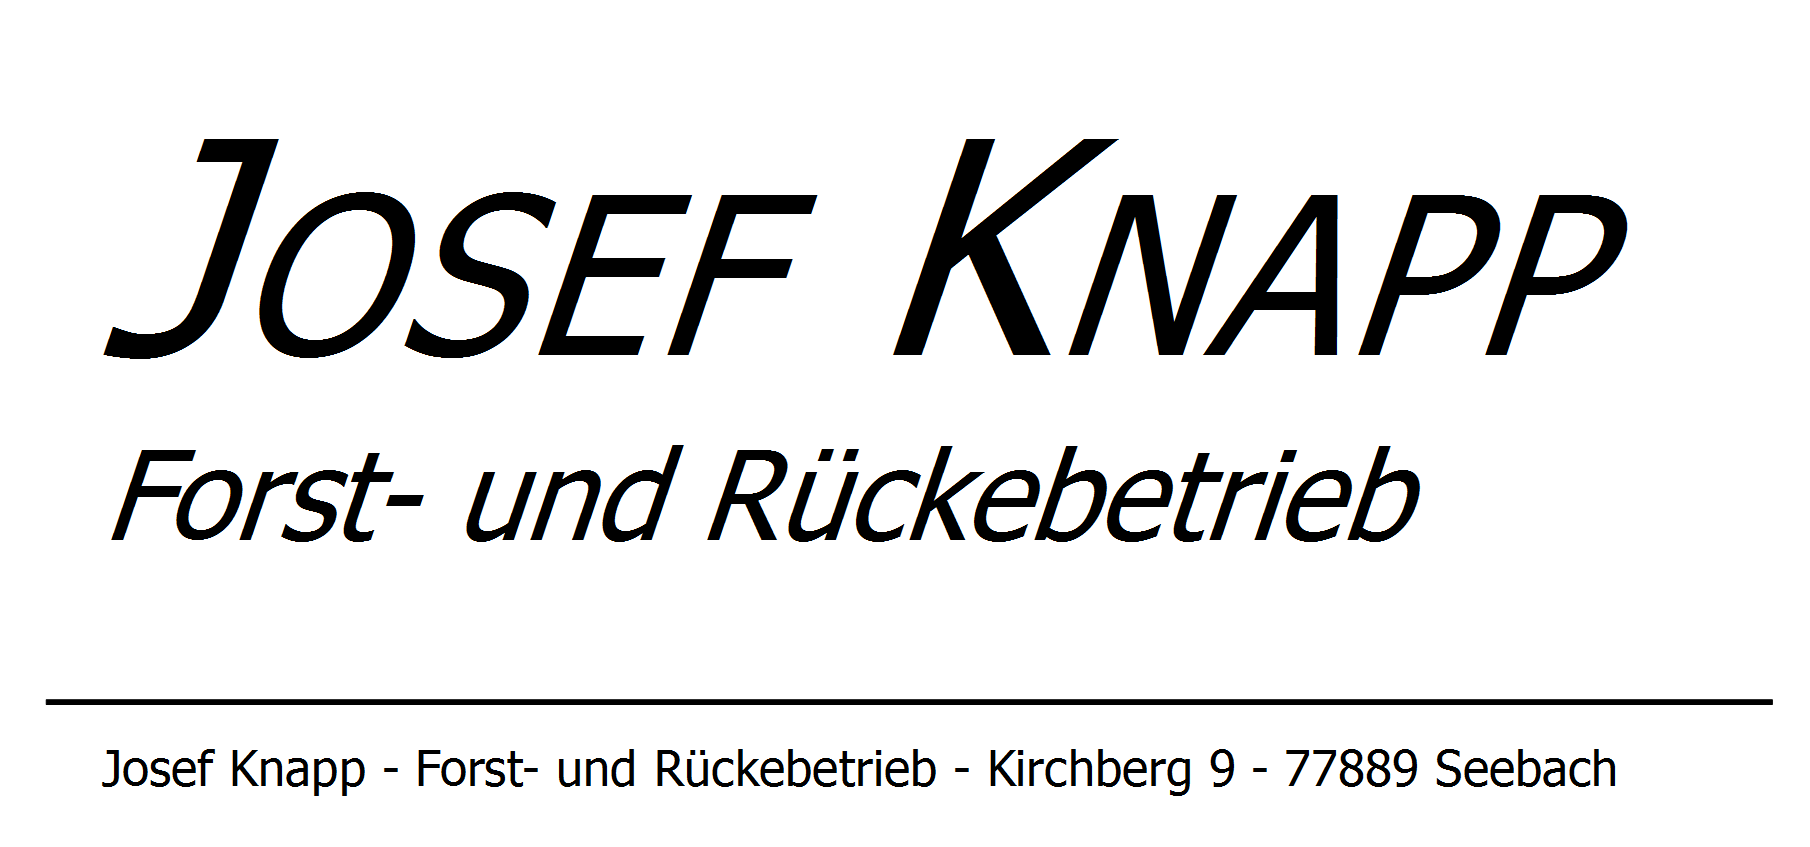  Josef Knapp Forst- und Rückebetrieb 